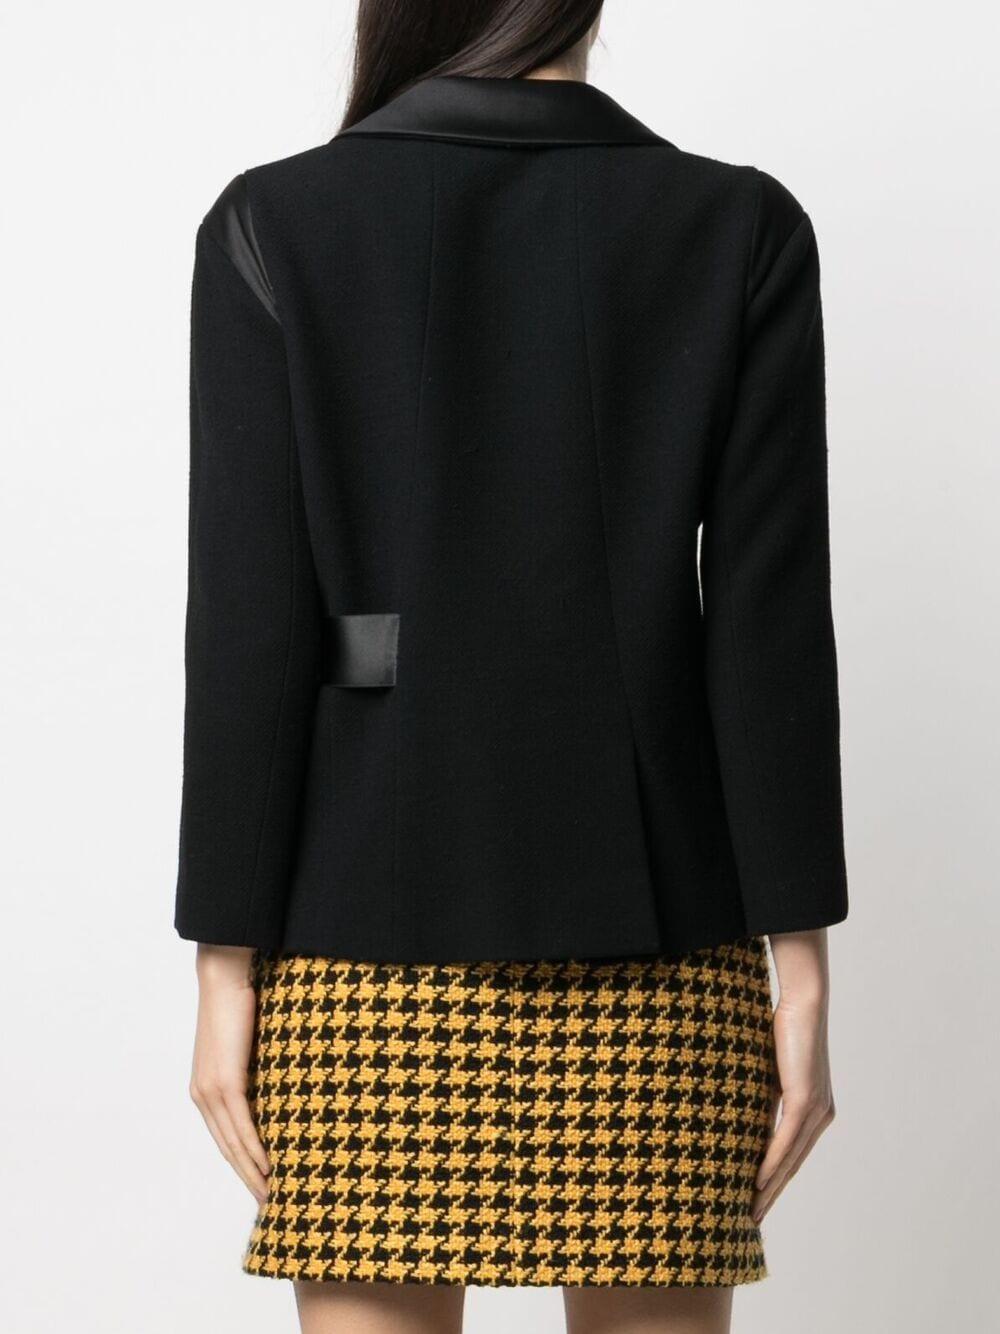 Chanel Paris / London Runway Black Tweed Jacket For Sale 3